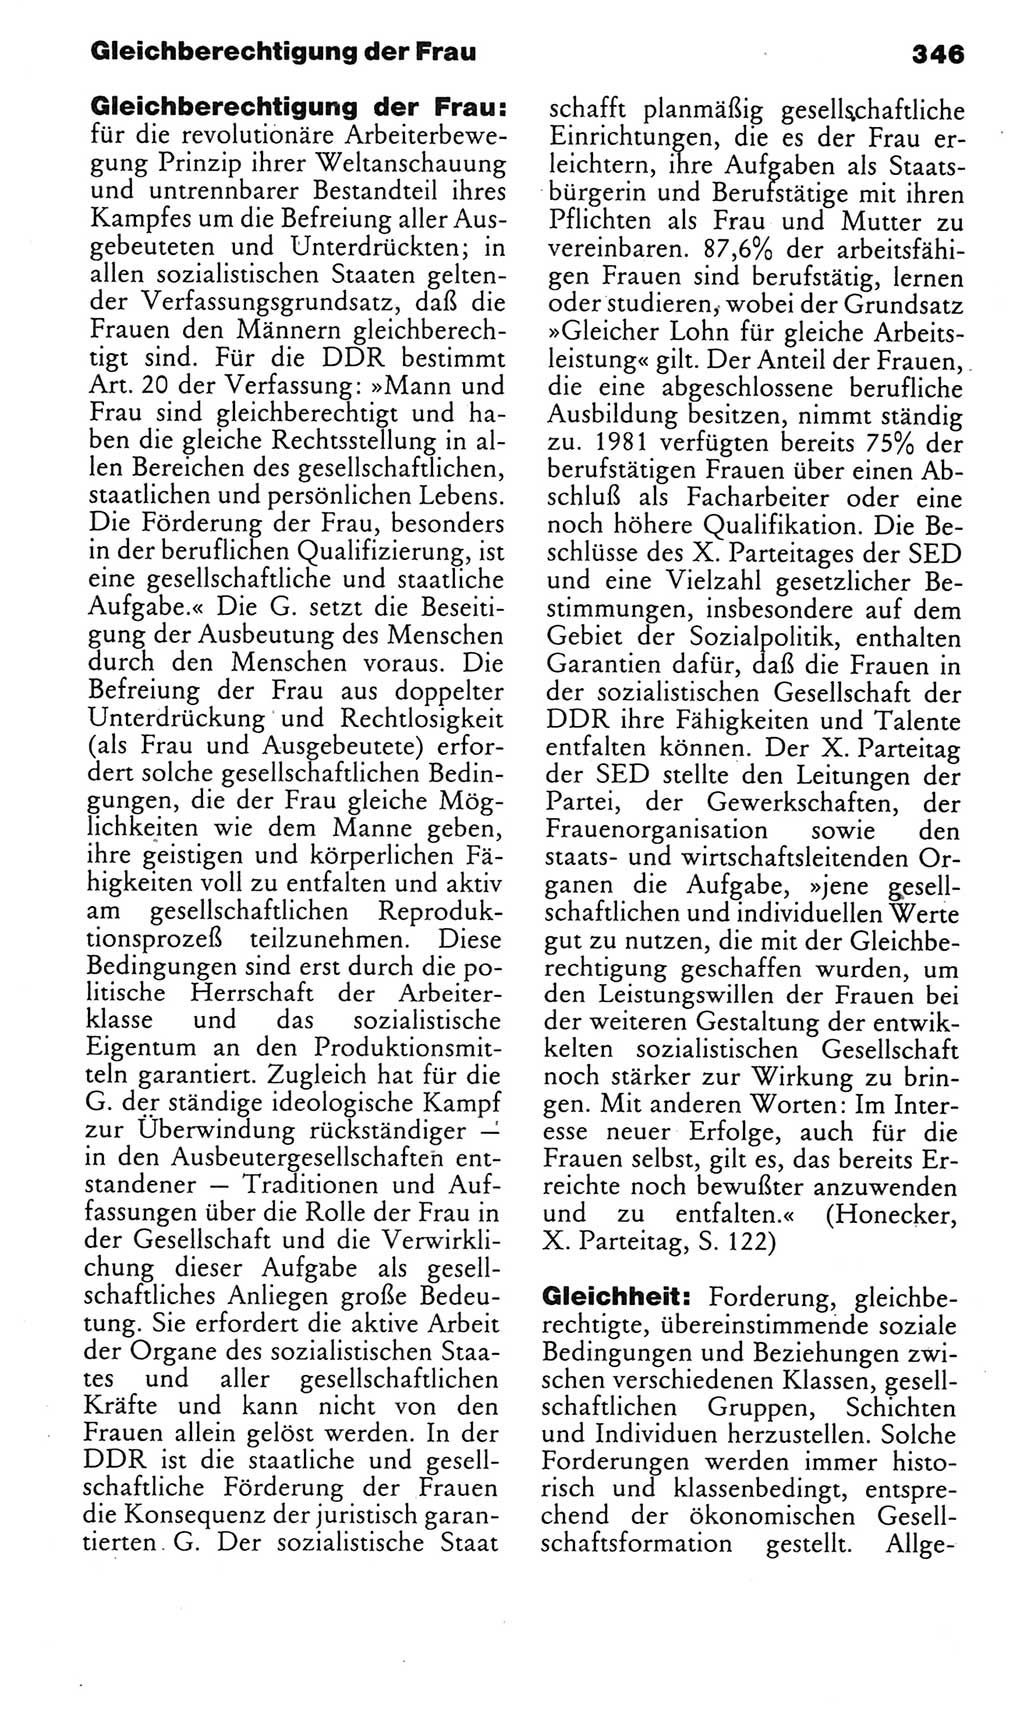 Kleines politisches Wörterbuch [Deutsche Demokratische Republik (DDR)] 1985, Seite 346 (Kl. pol. Wb. DDR 1985, S. 346)